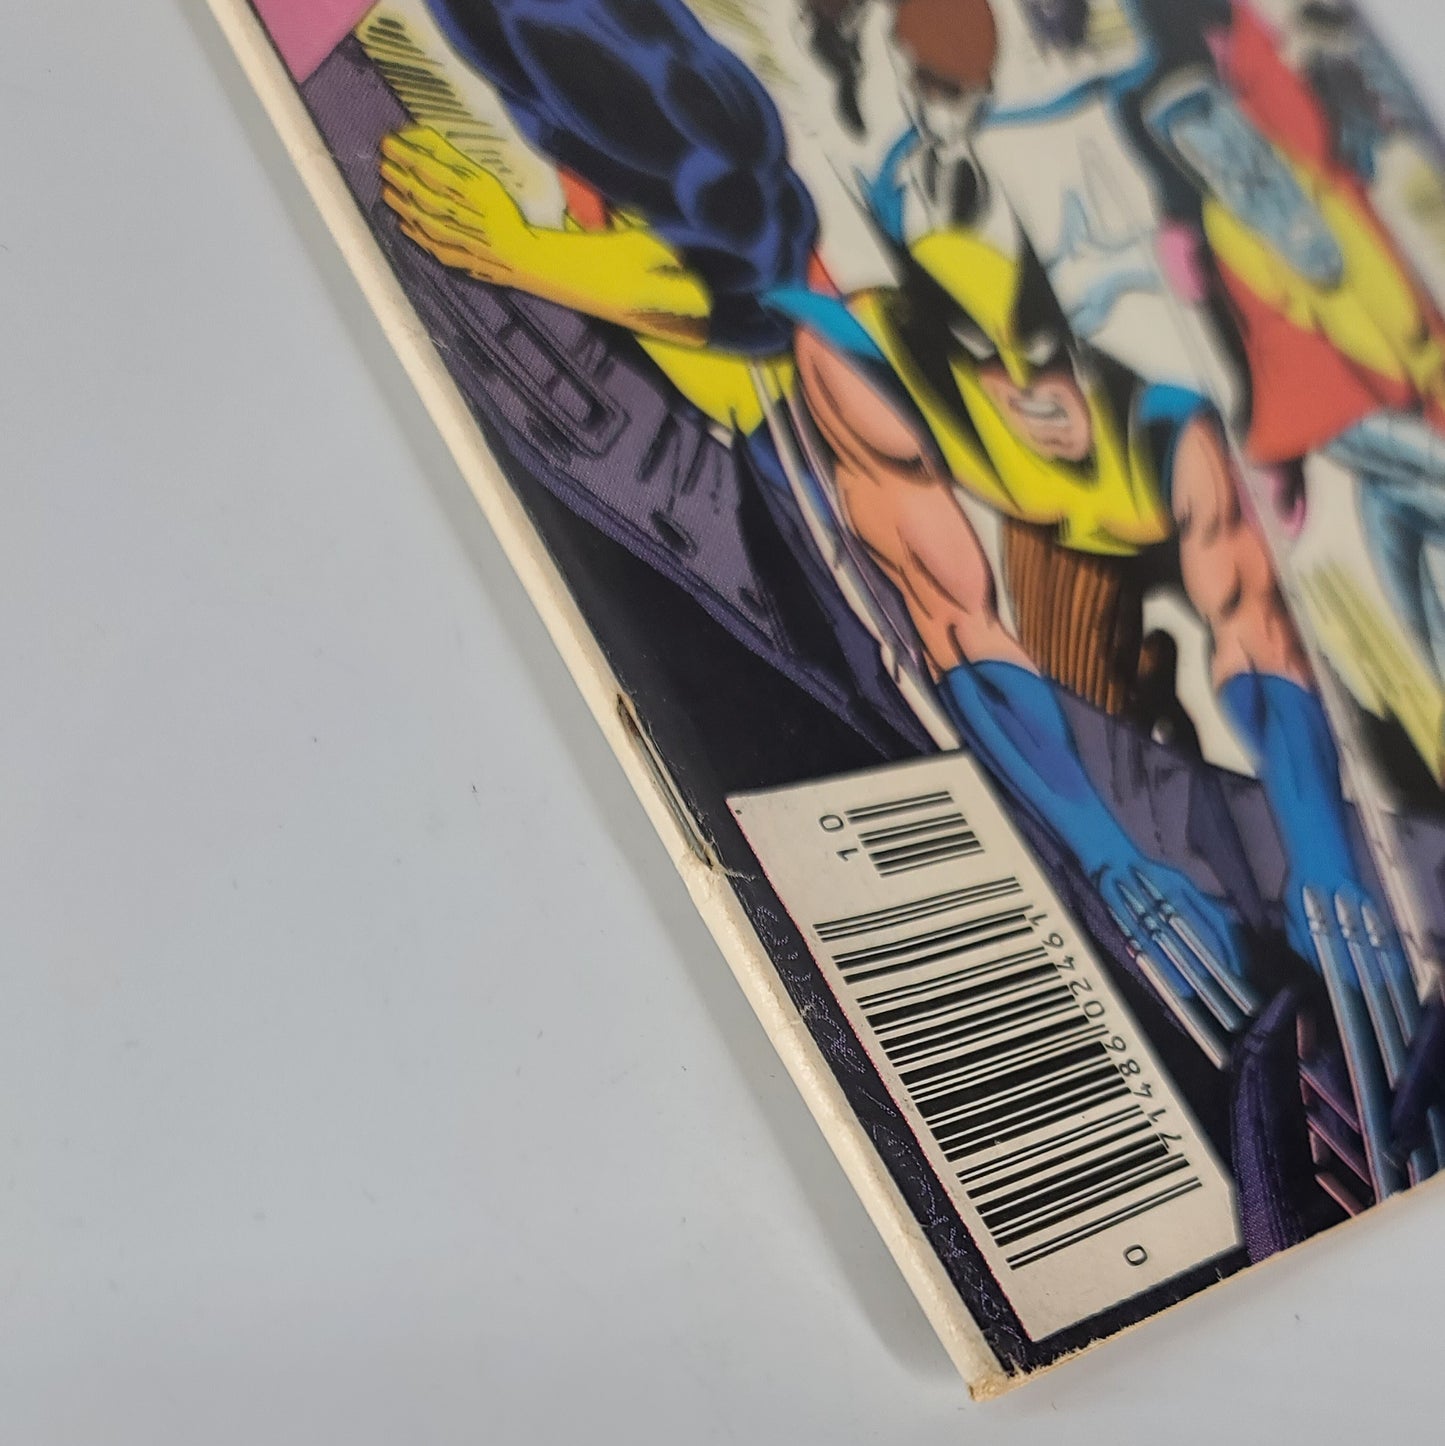 The Uncanny X-Men #126 (1979)